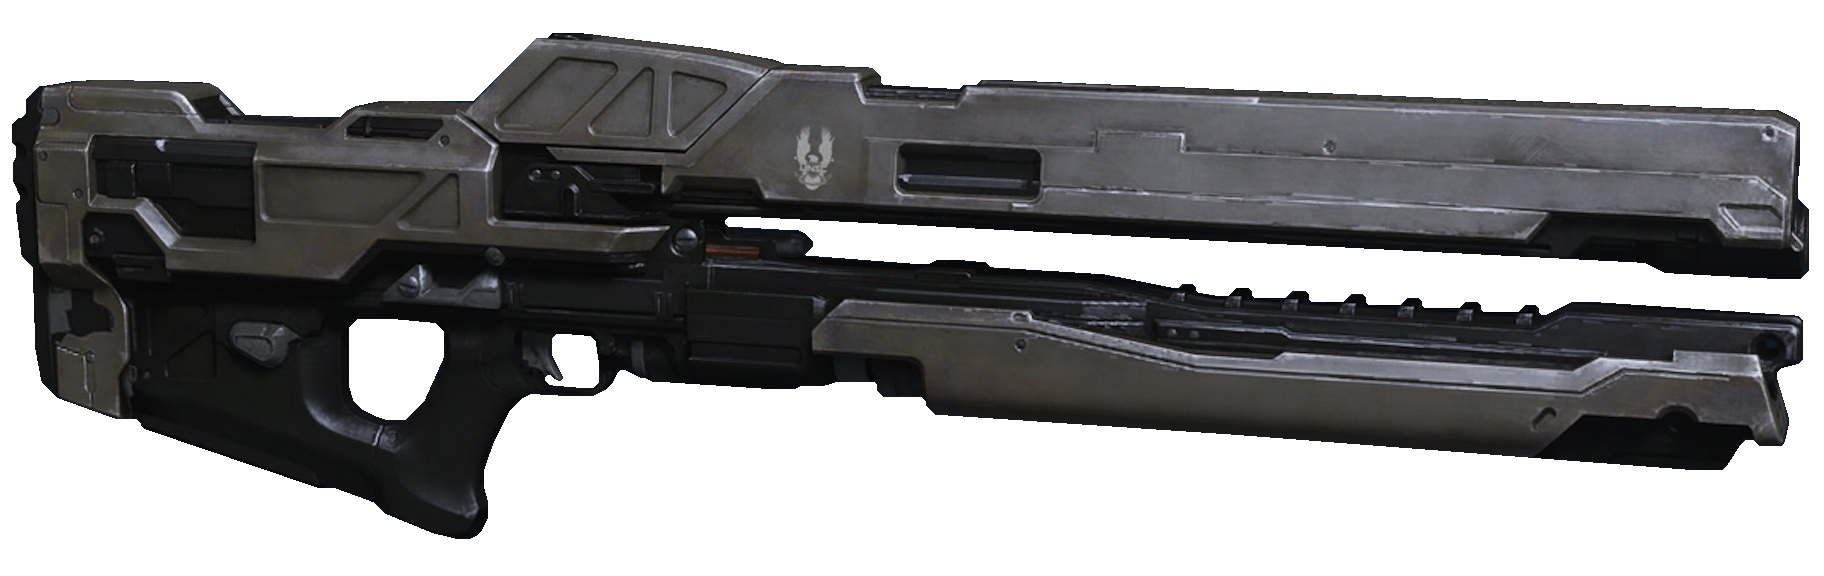 【HALO军械频道】ARC-920磁轨枪 —— 最好的单兵电磁武器-第18张